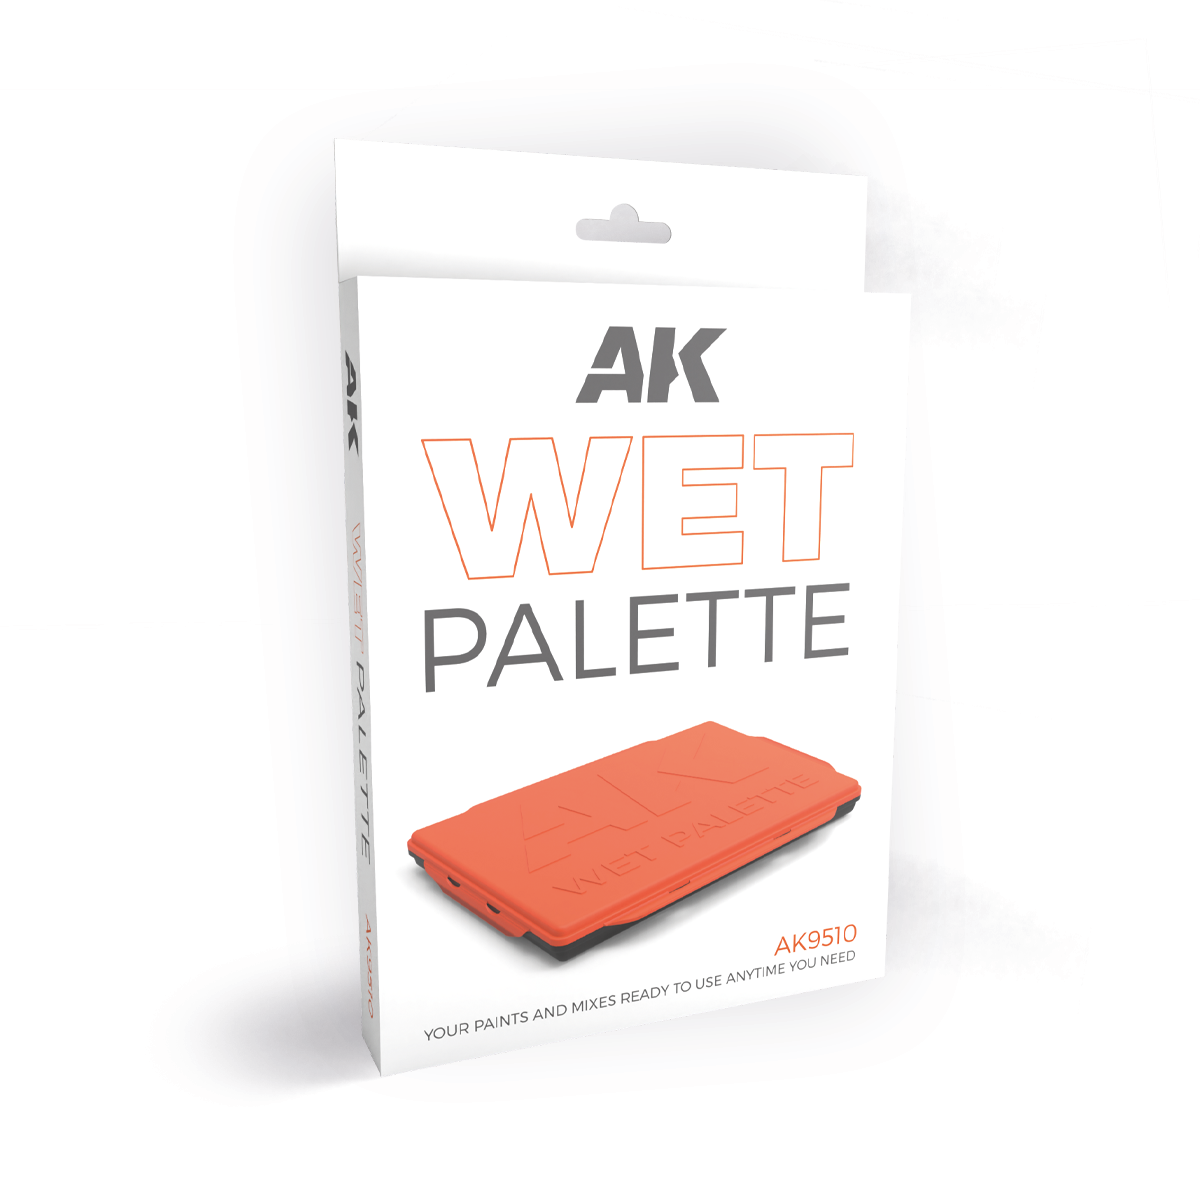 Buy AK WET PALETTE - PALETA HUMEDA AK online for19,95